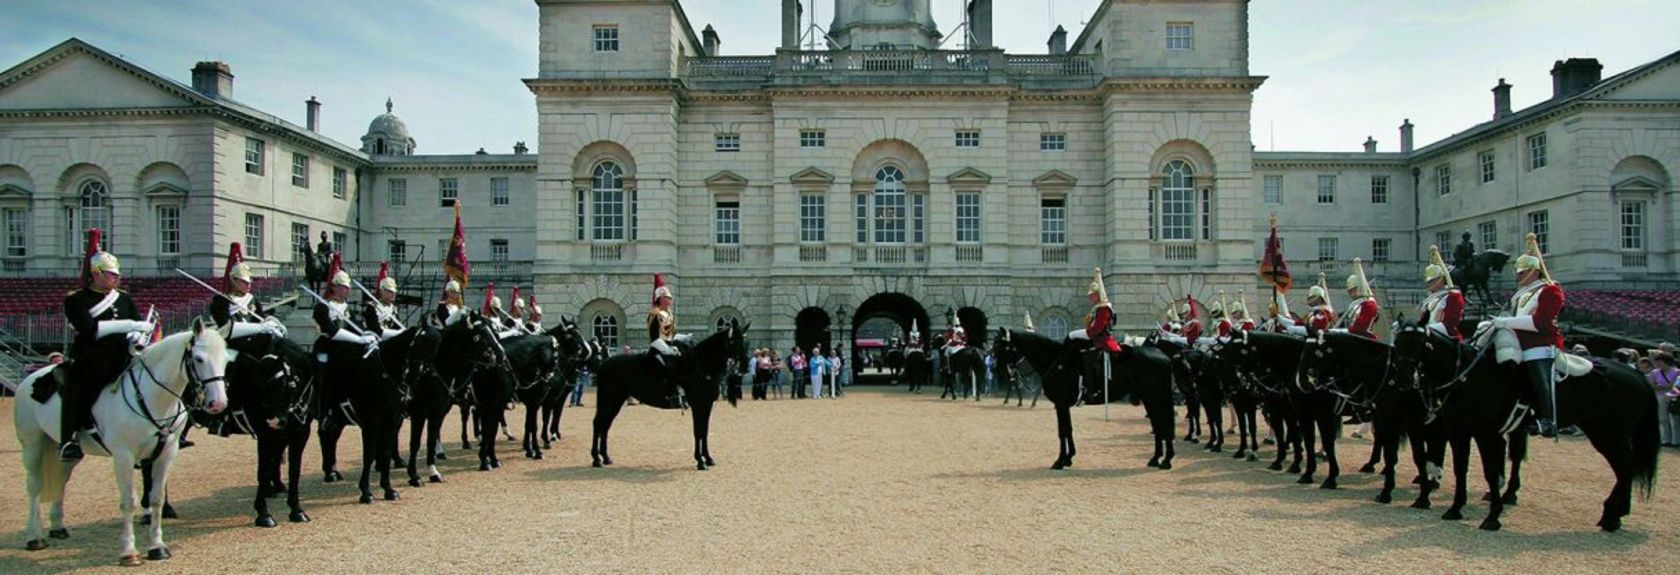 No Household Cavalry Museum no centro de Londres você pode aprender tudo sobre a vida no século 18, os soldados que protegem a rainha, o treinamento dos soldados e os cavalos dos Queen’s Life Guards